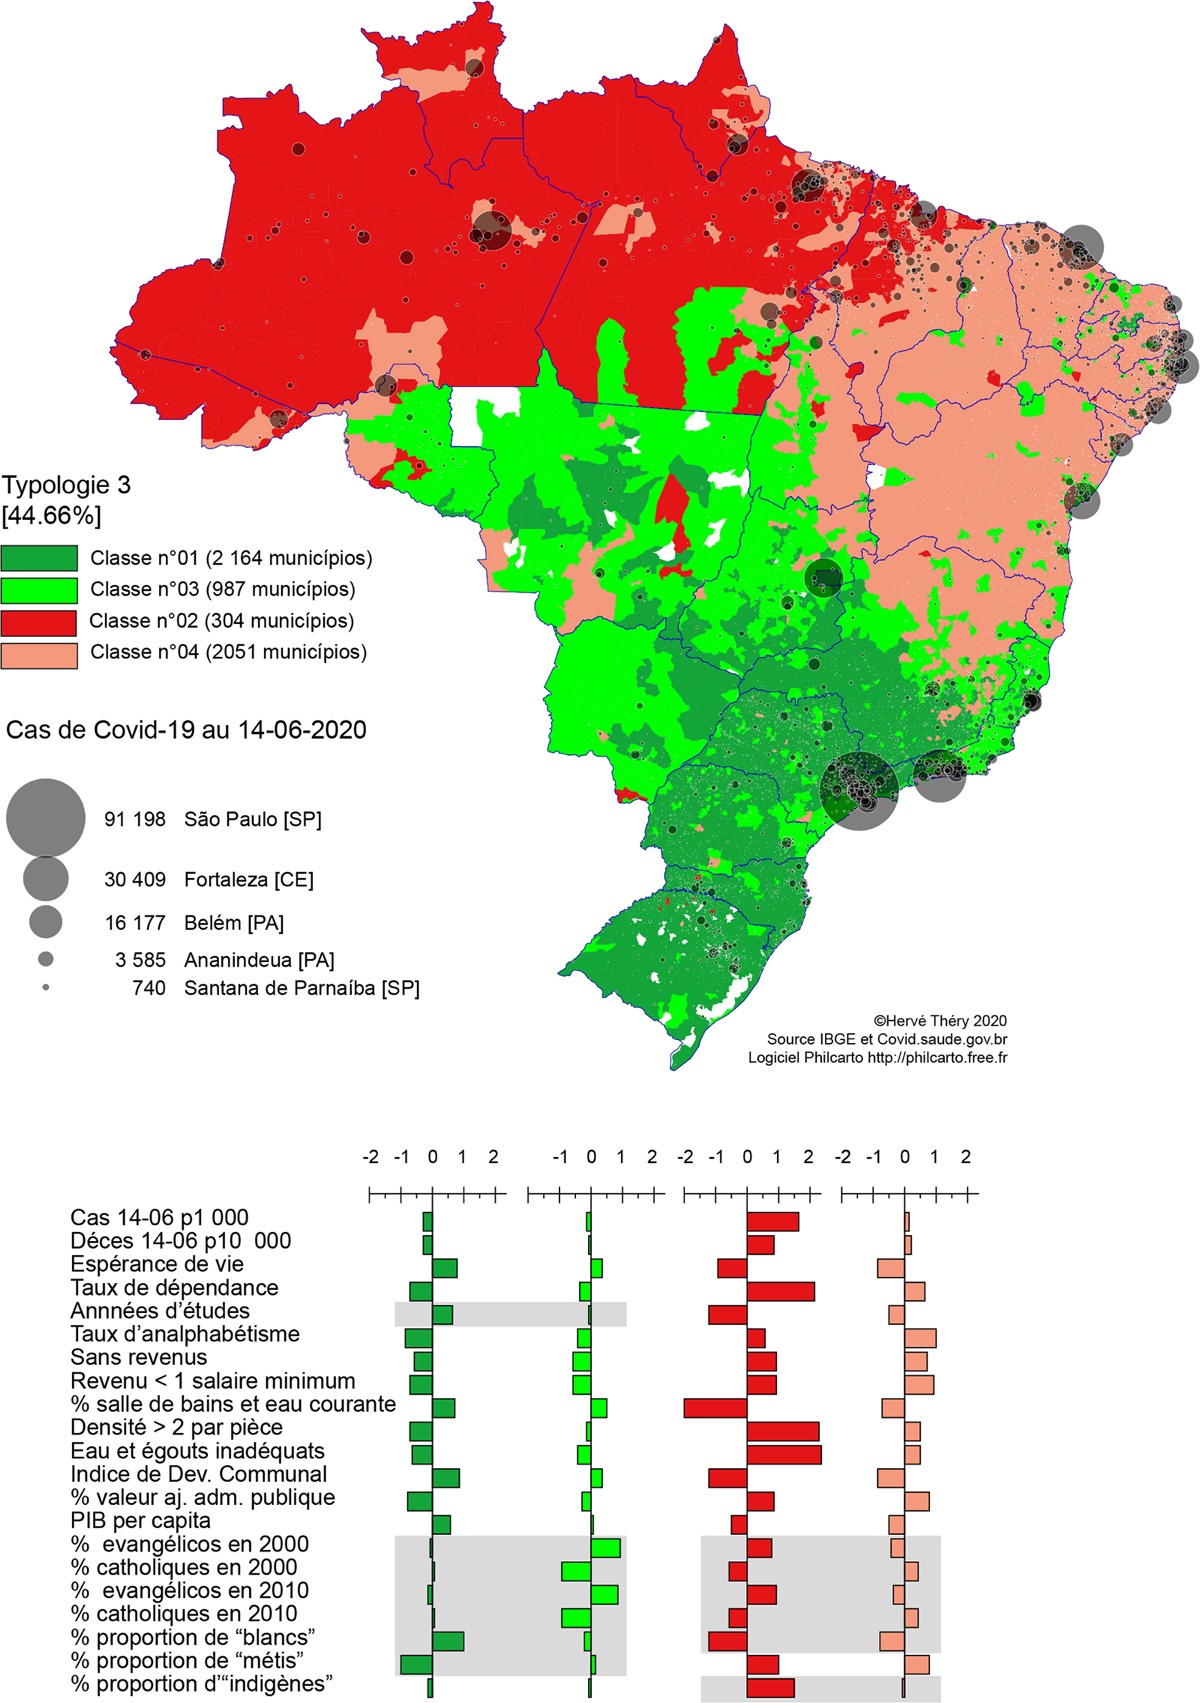 Quels sont les facteurs associés à la propagation de l'épidémie de Covid-19 au Brésil ?